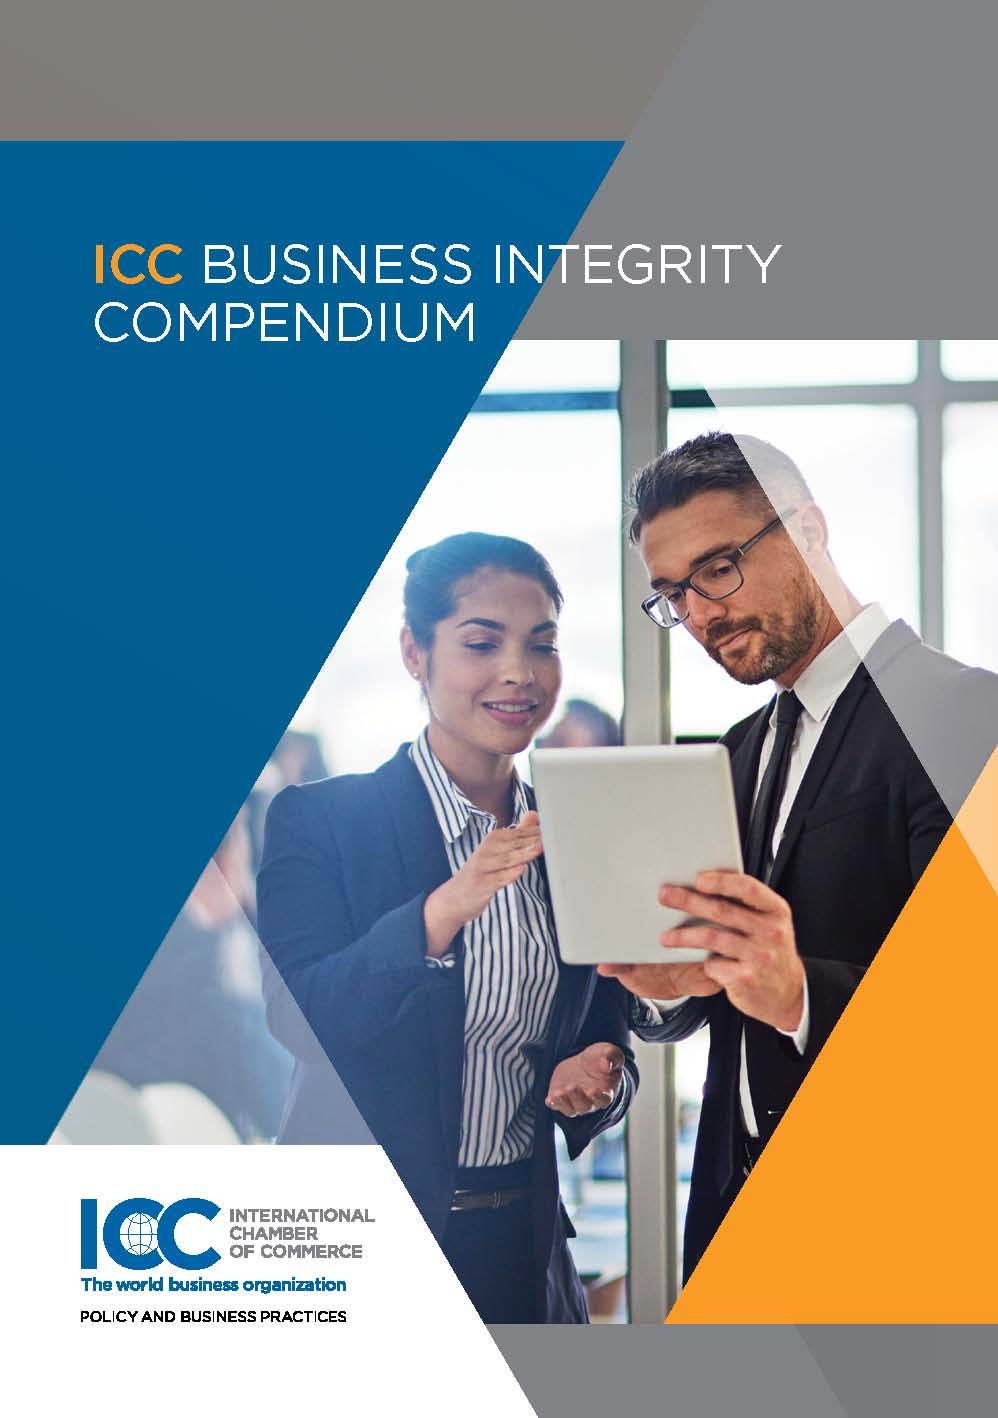 ICC Business Integrity Compendium